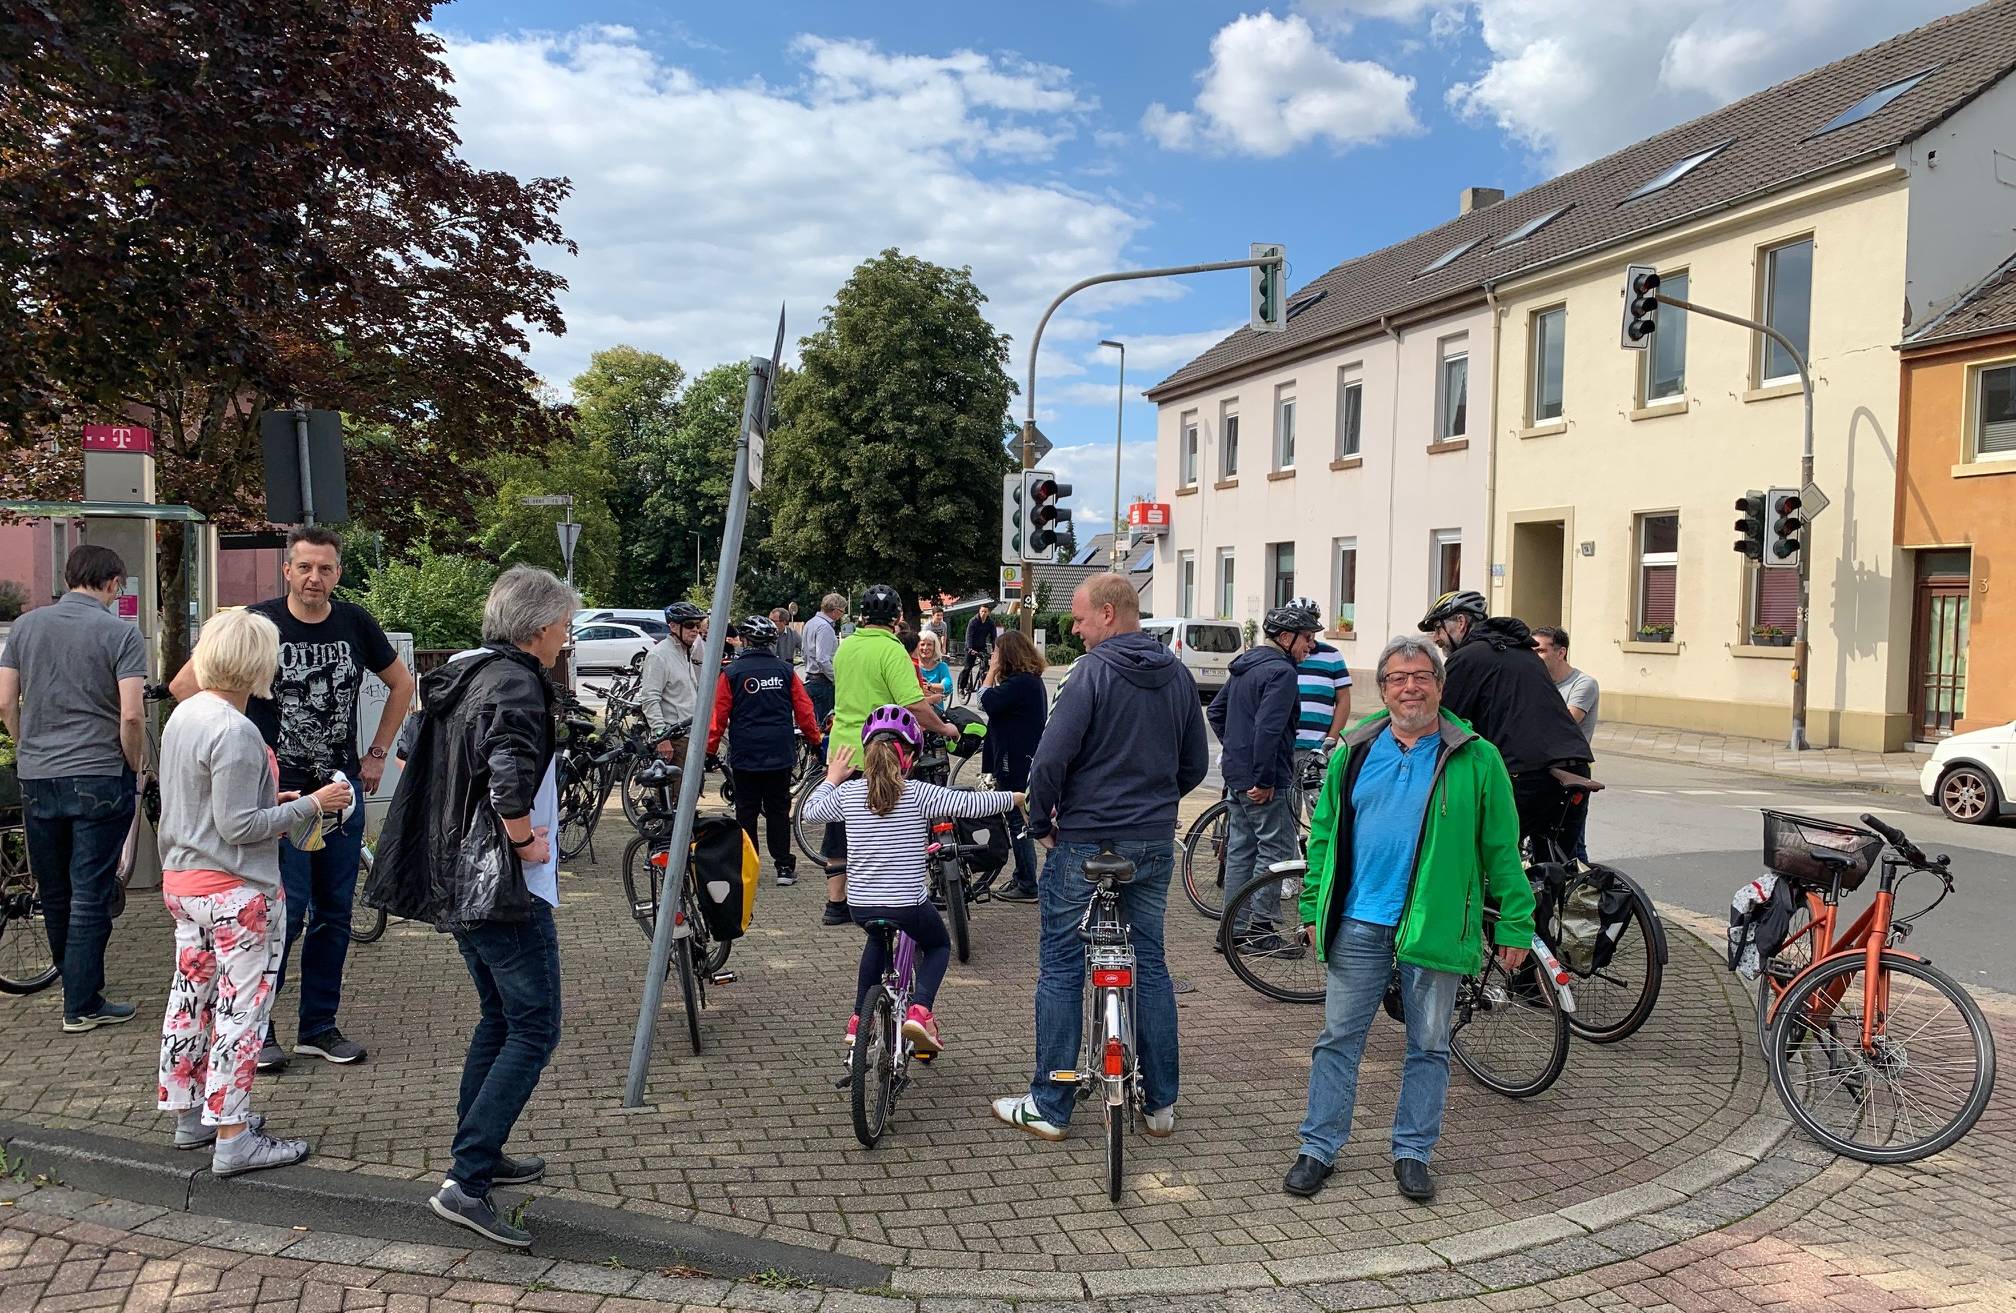  Radtour mit Bündnis 90/Die Grünen am gestrigen Sonntag anlässlich der Eröffnung des Stadtradelns in Erkrath. 